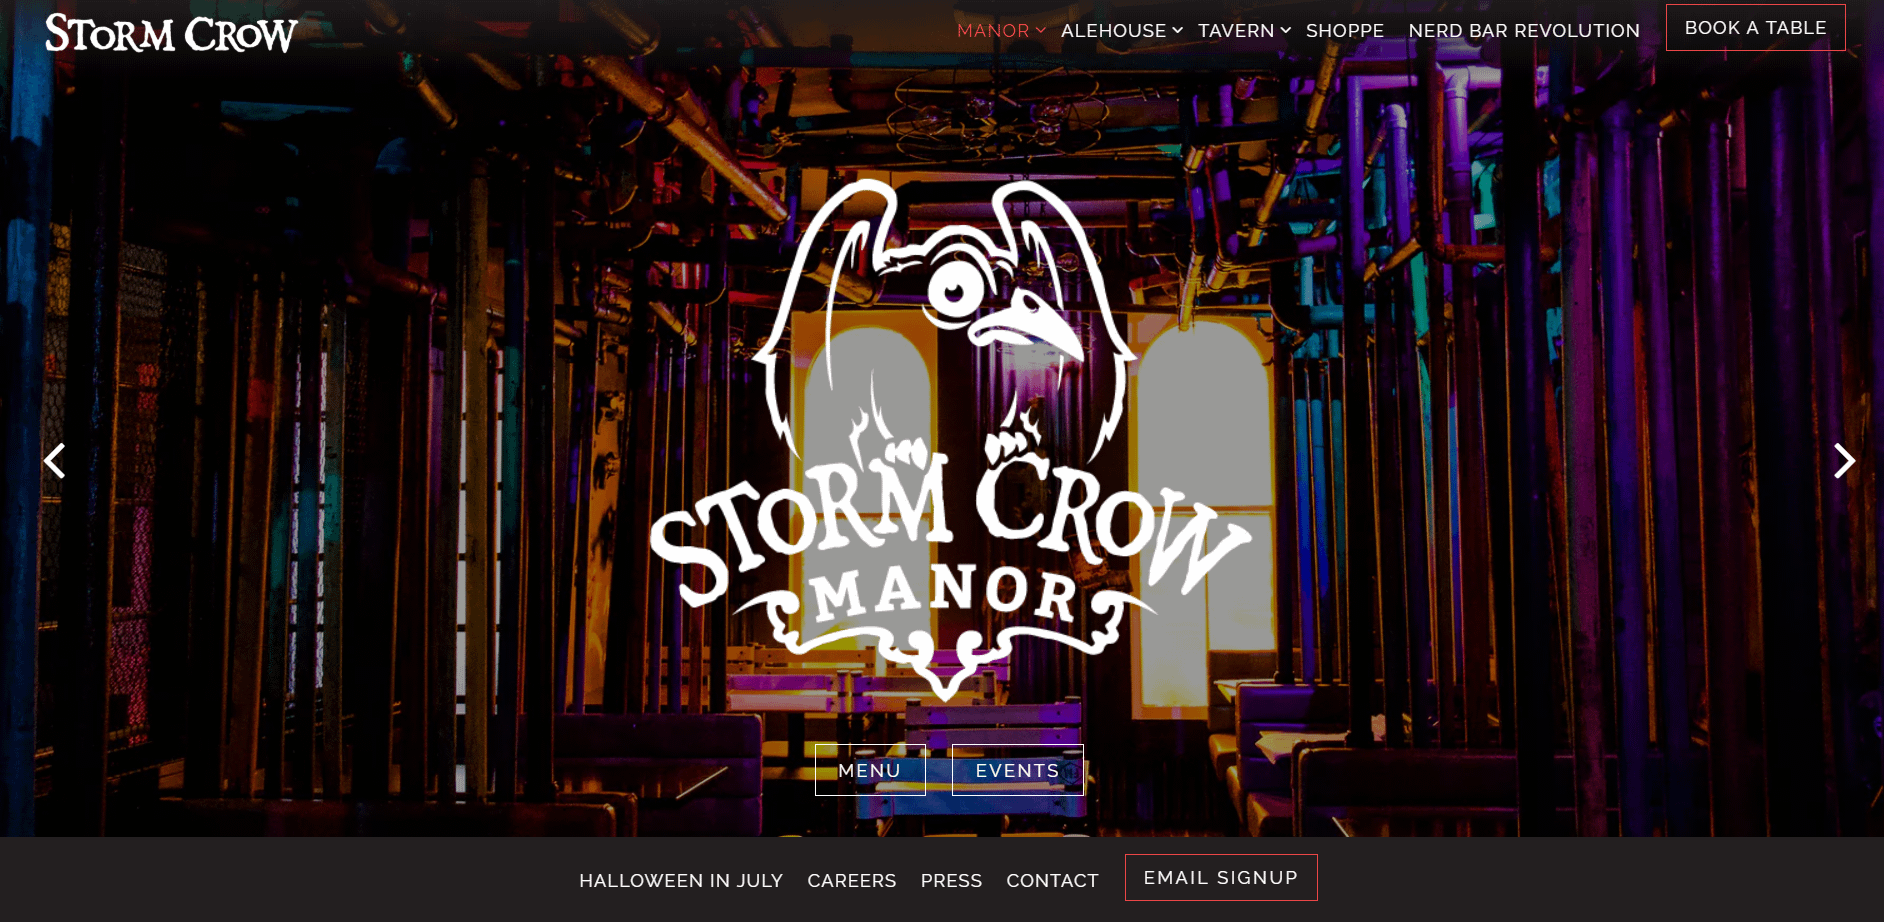 The Stormcrown Manner нужен веб-сайт, чтобы дать представление о его декоре.